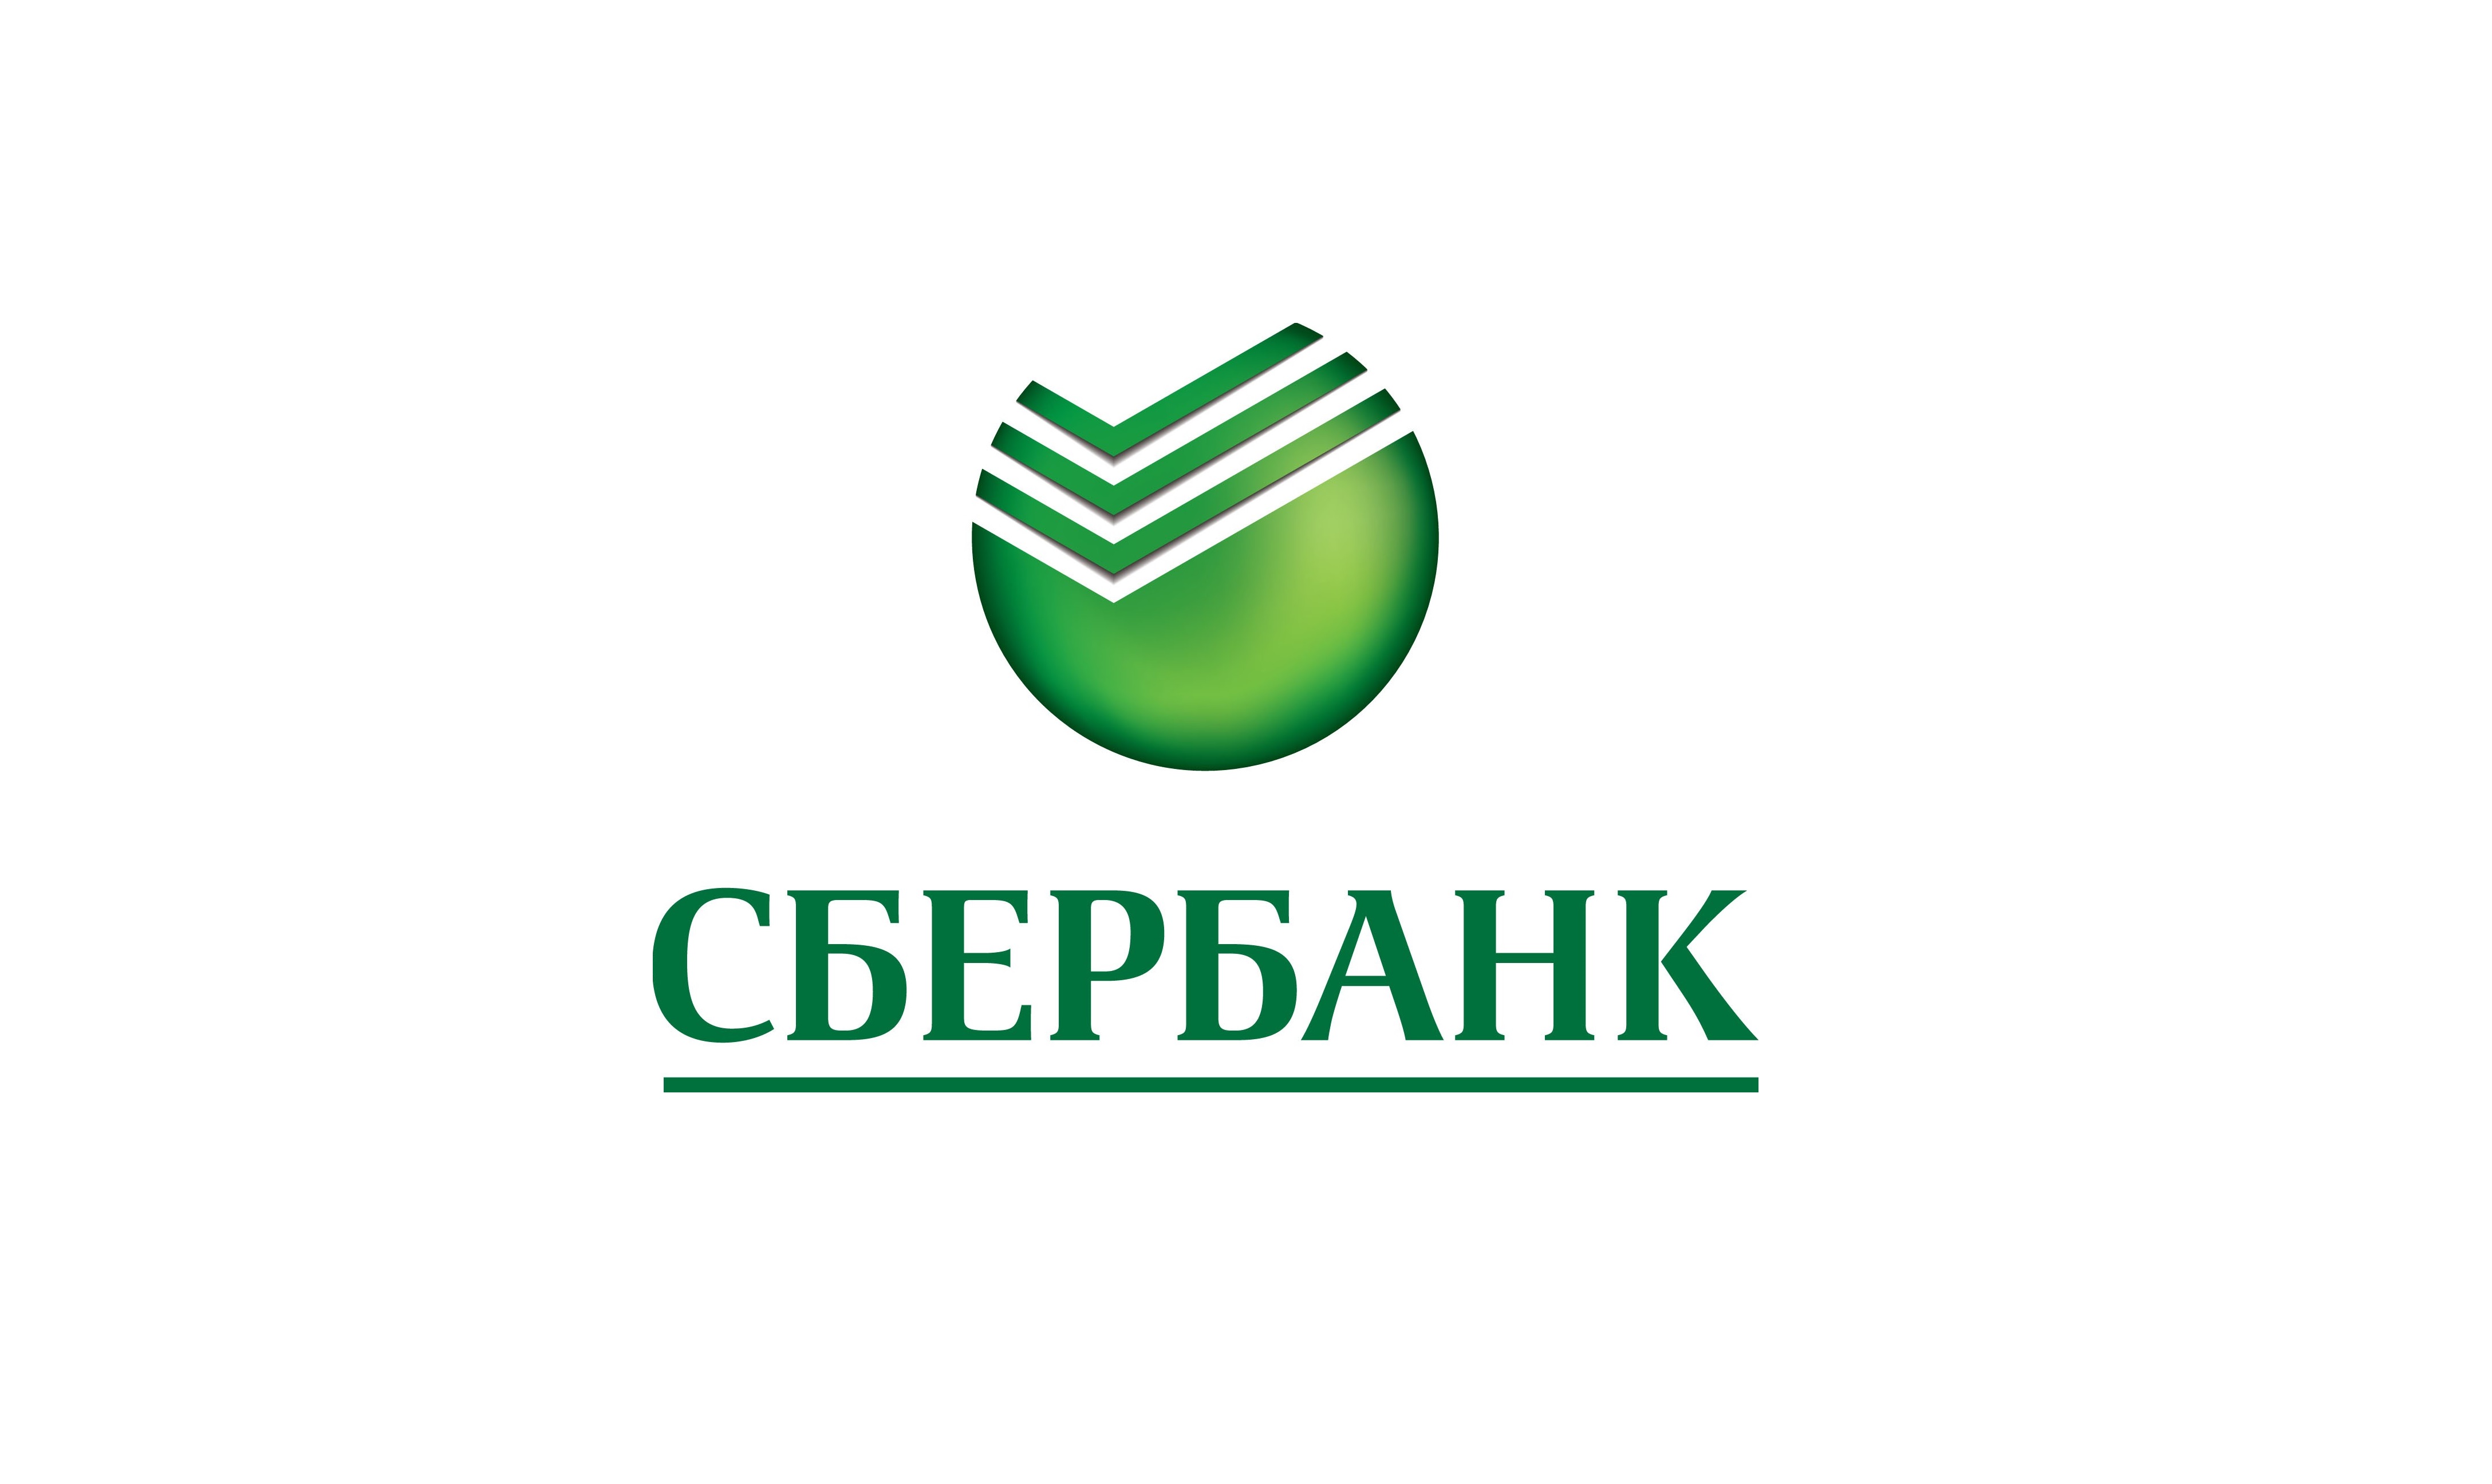 Ежемесячно в Западно-Уральском банке совершается более 23 млн транзакций по банковским картам через терминалы Сбербанка